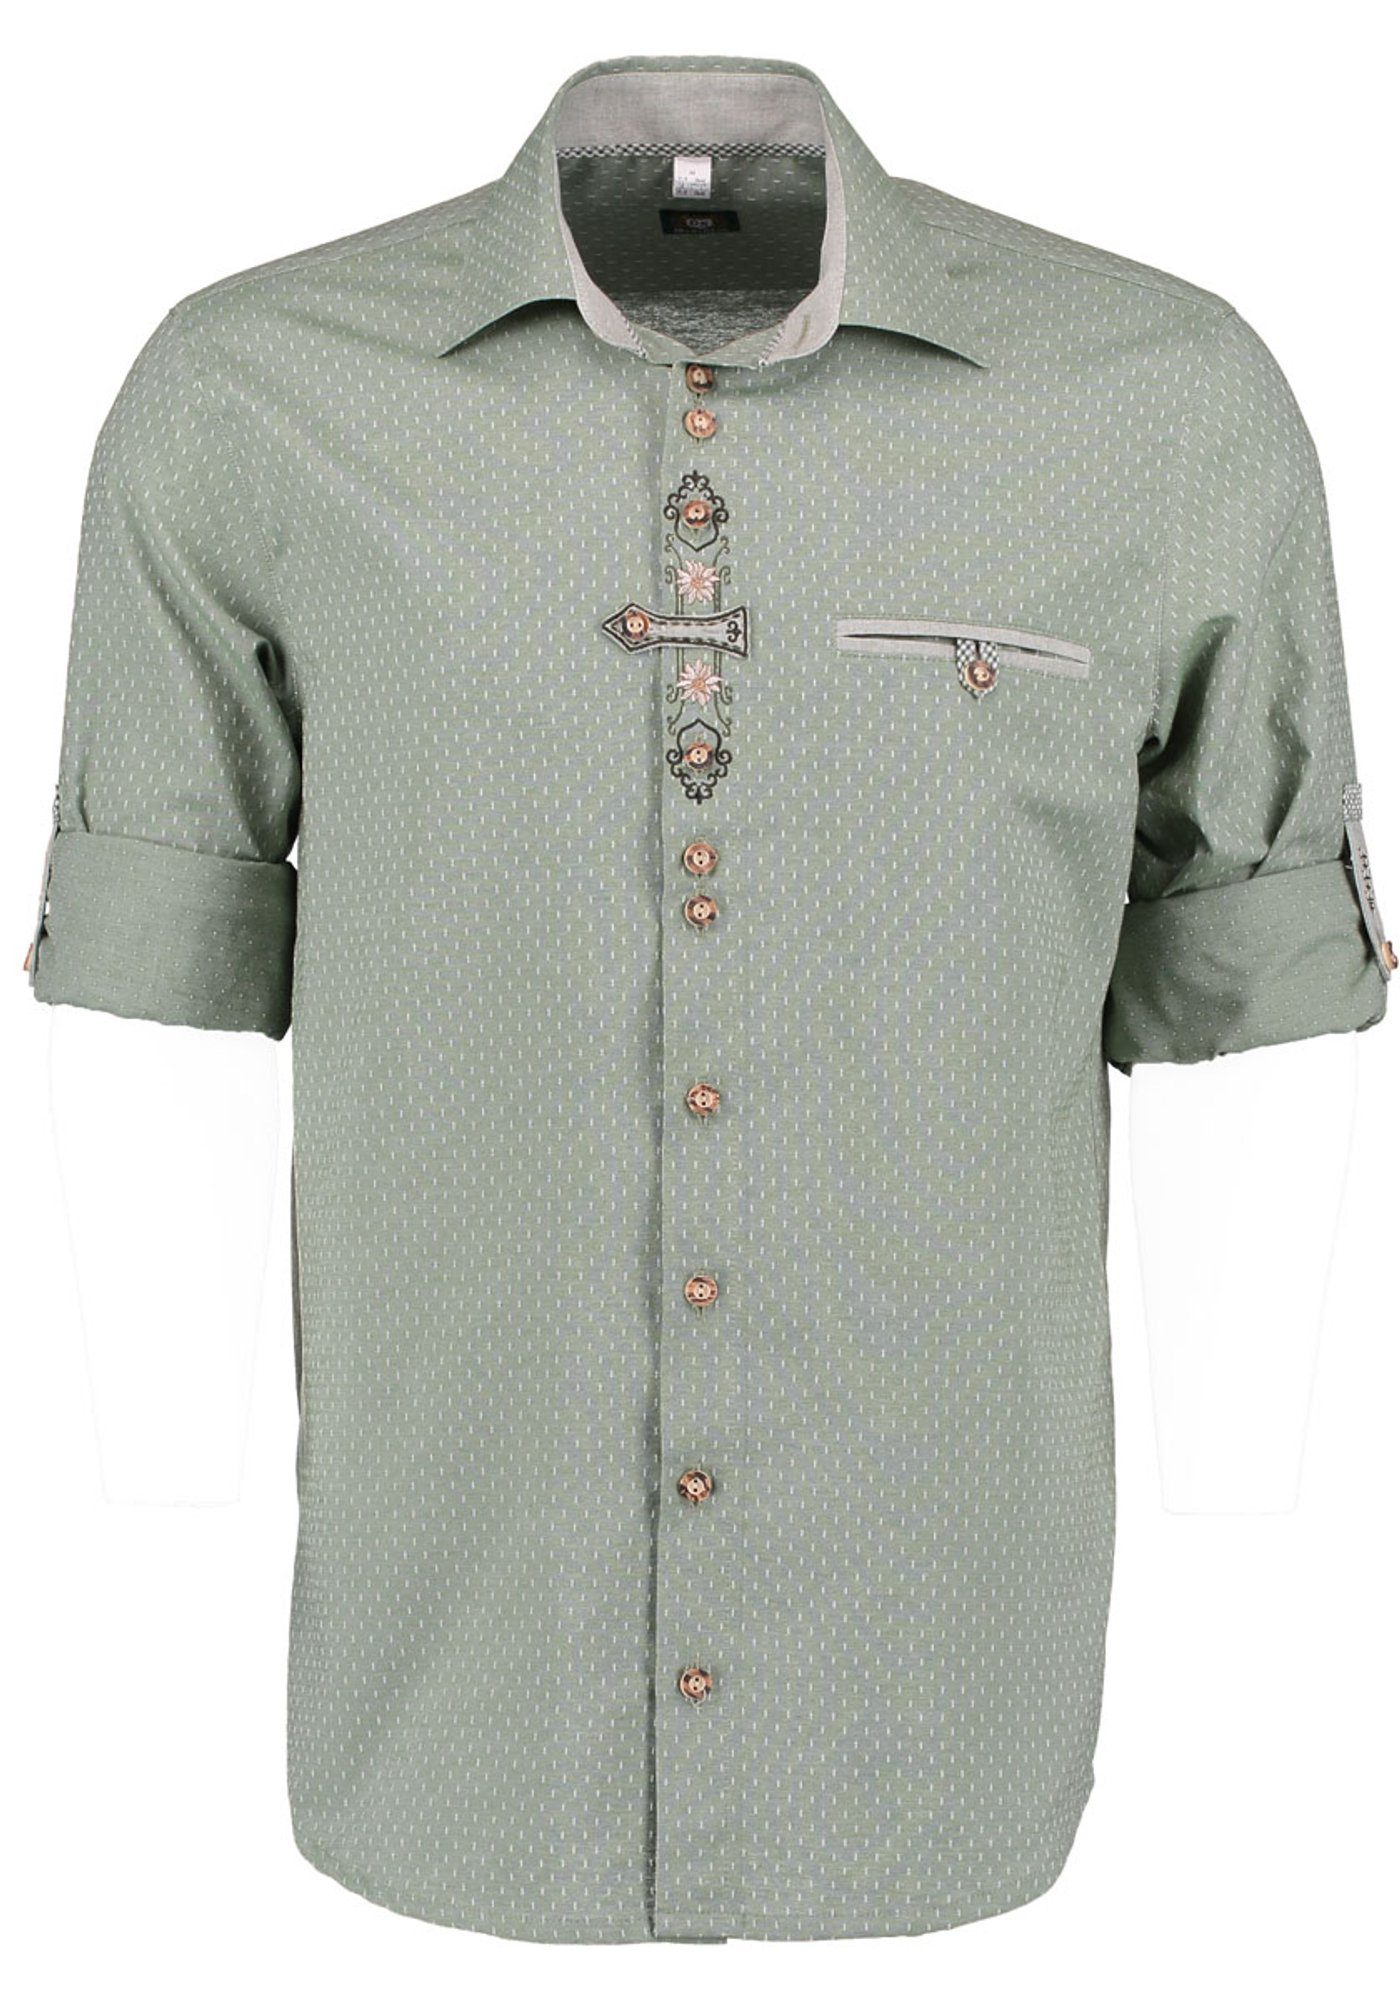 Langarmhemd auf OS-Trachten Knopfleiste der Olore Edelweiß-Stickerei khaki/schlamm Trachtenhemd mit